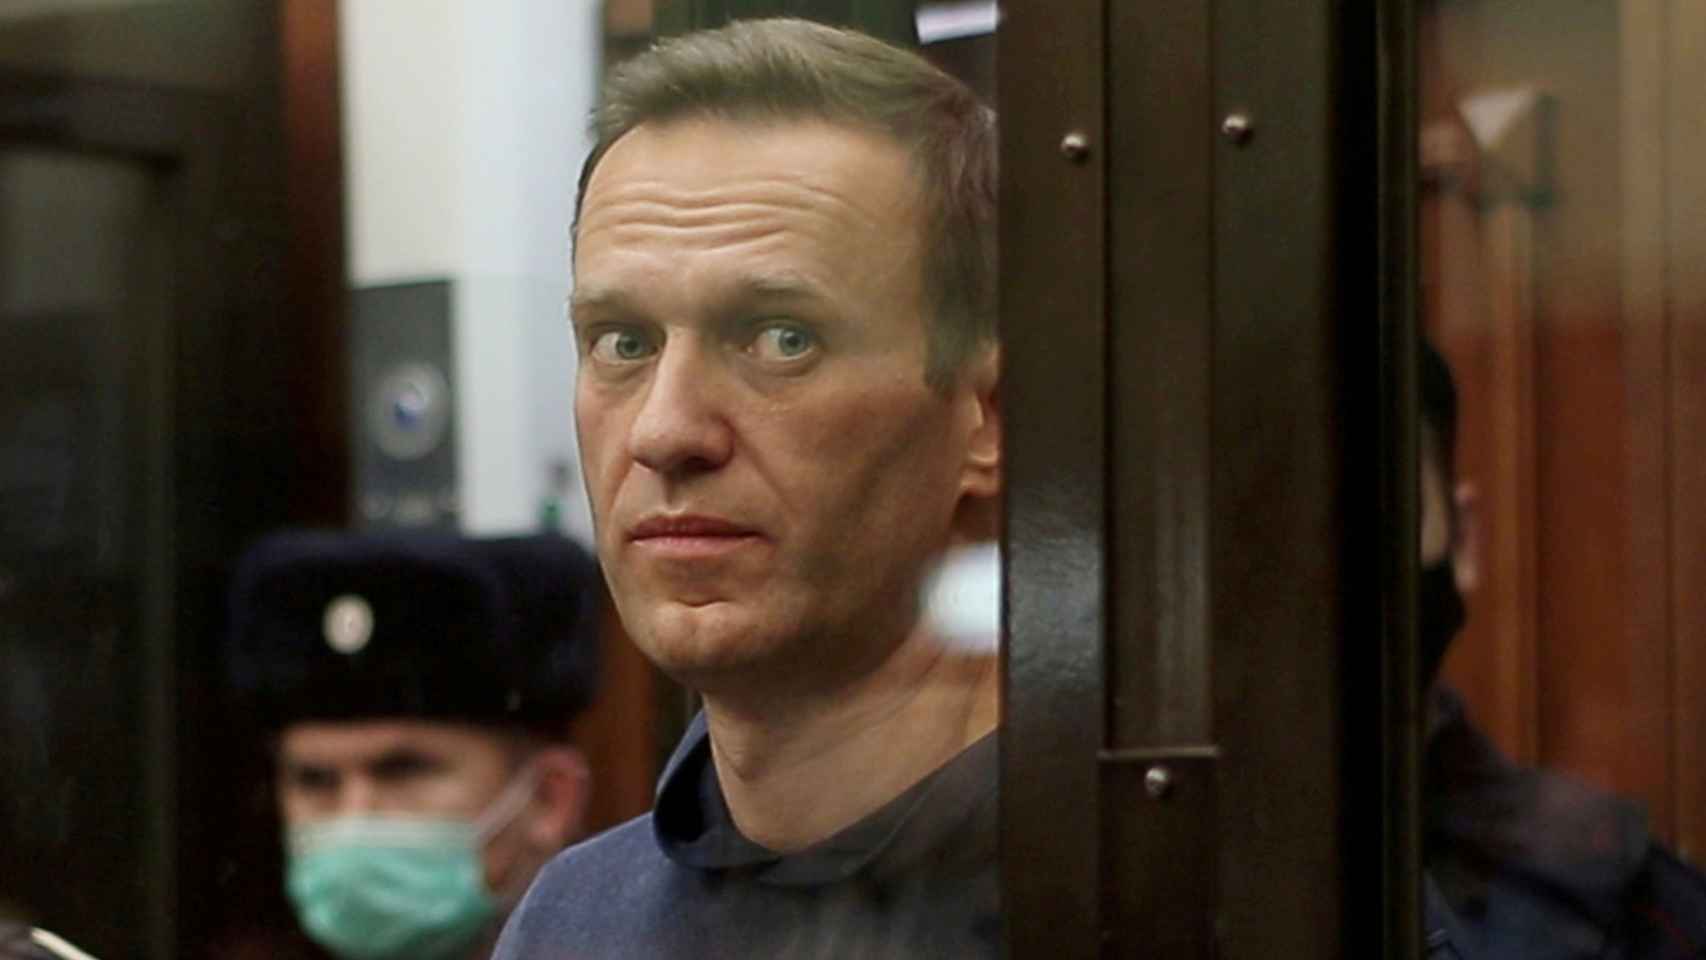 Alexéi Navalni durante la audiencia en la que fue condenado a tres años y medio de prisión.